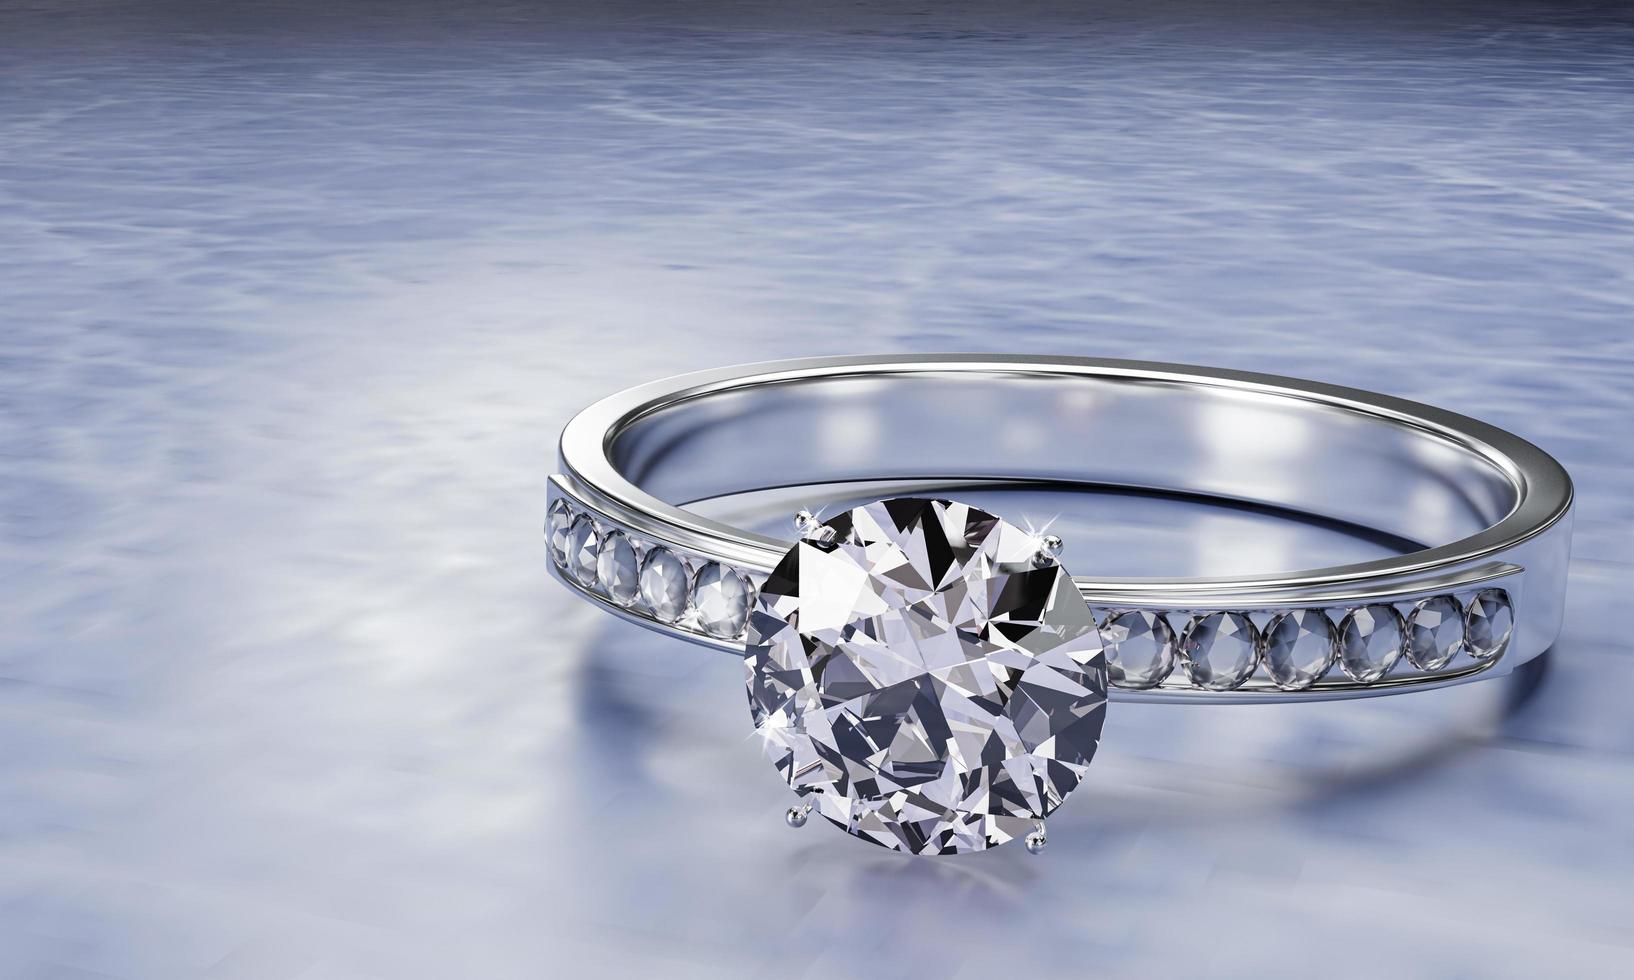 de grote diamant is omgeven door vele diamanten op de ring gemaakt van platina goud geplaatst op een grijze achtergrond. elegante trouwring met diamanten voor vrouwen. 3D-rendering foto